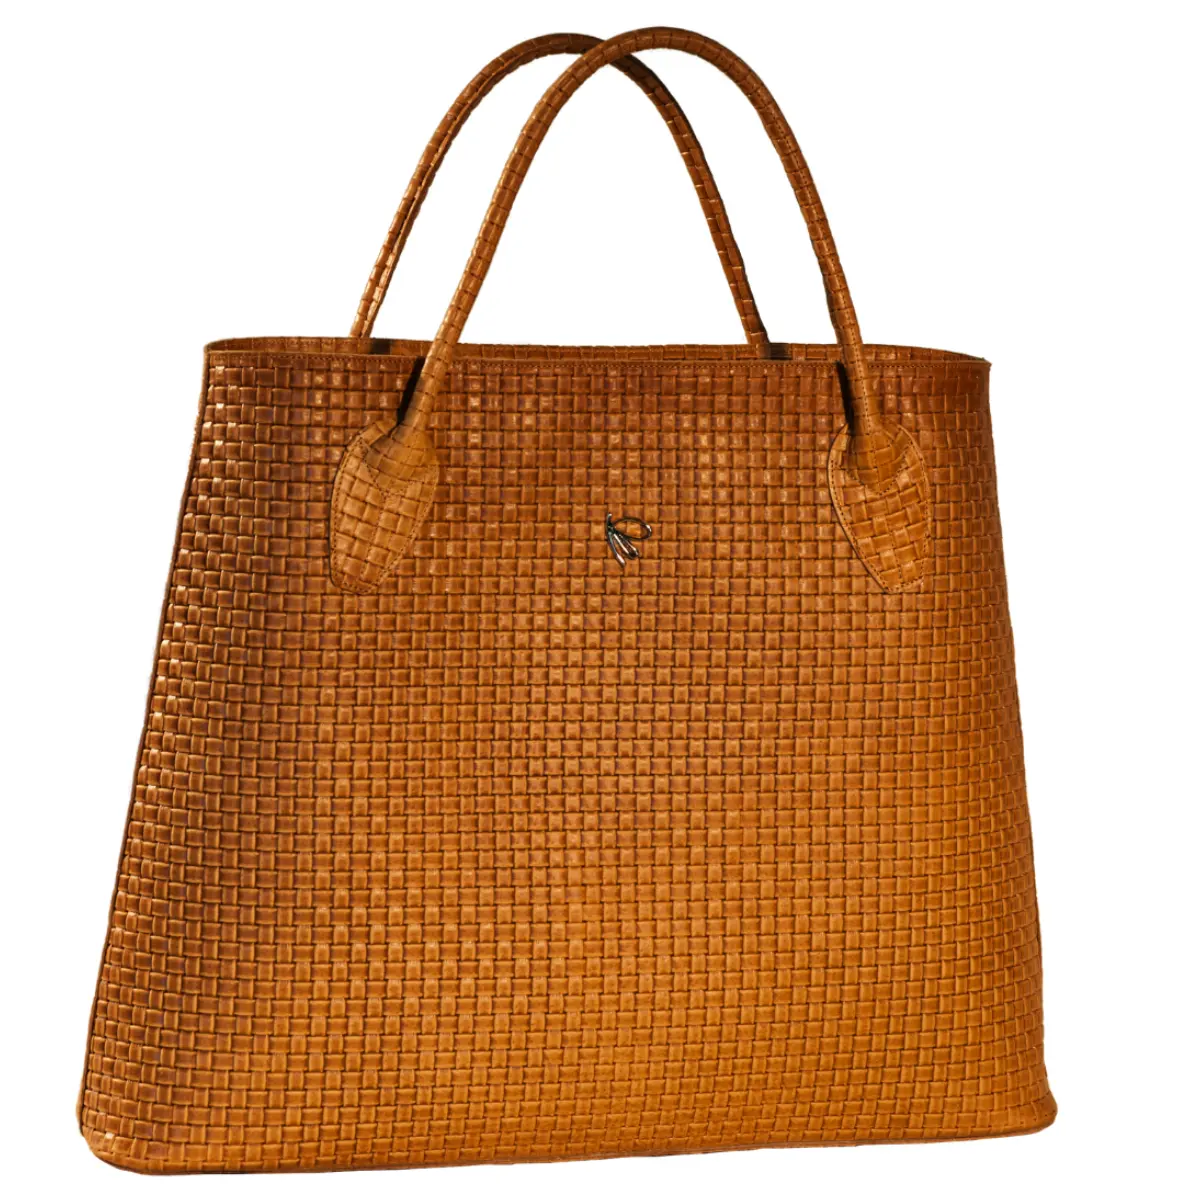 Высококачественная итальянская женская сумка-тоут ручной работы из натуральной кожи с ручками NICOLE INTERWEAVING